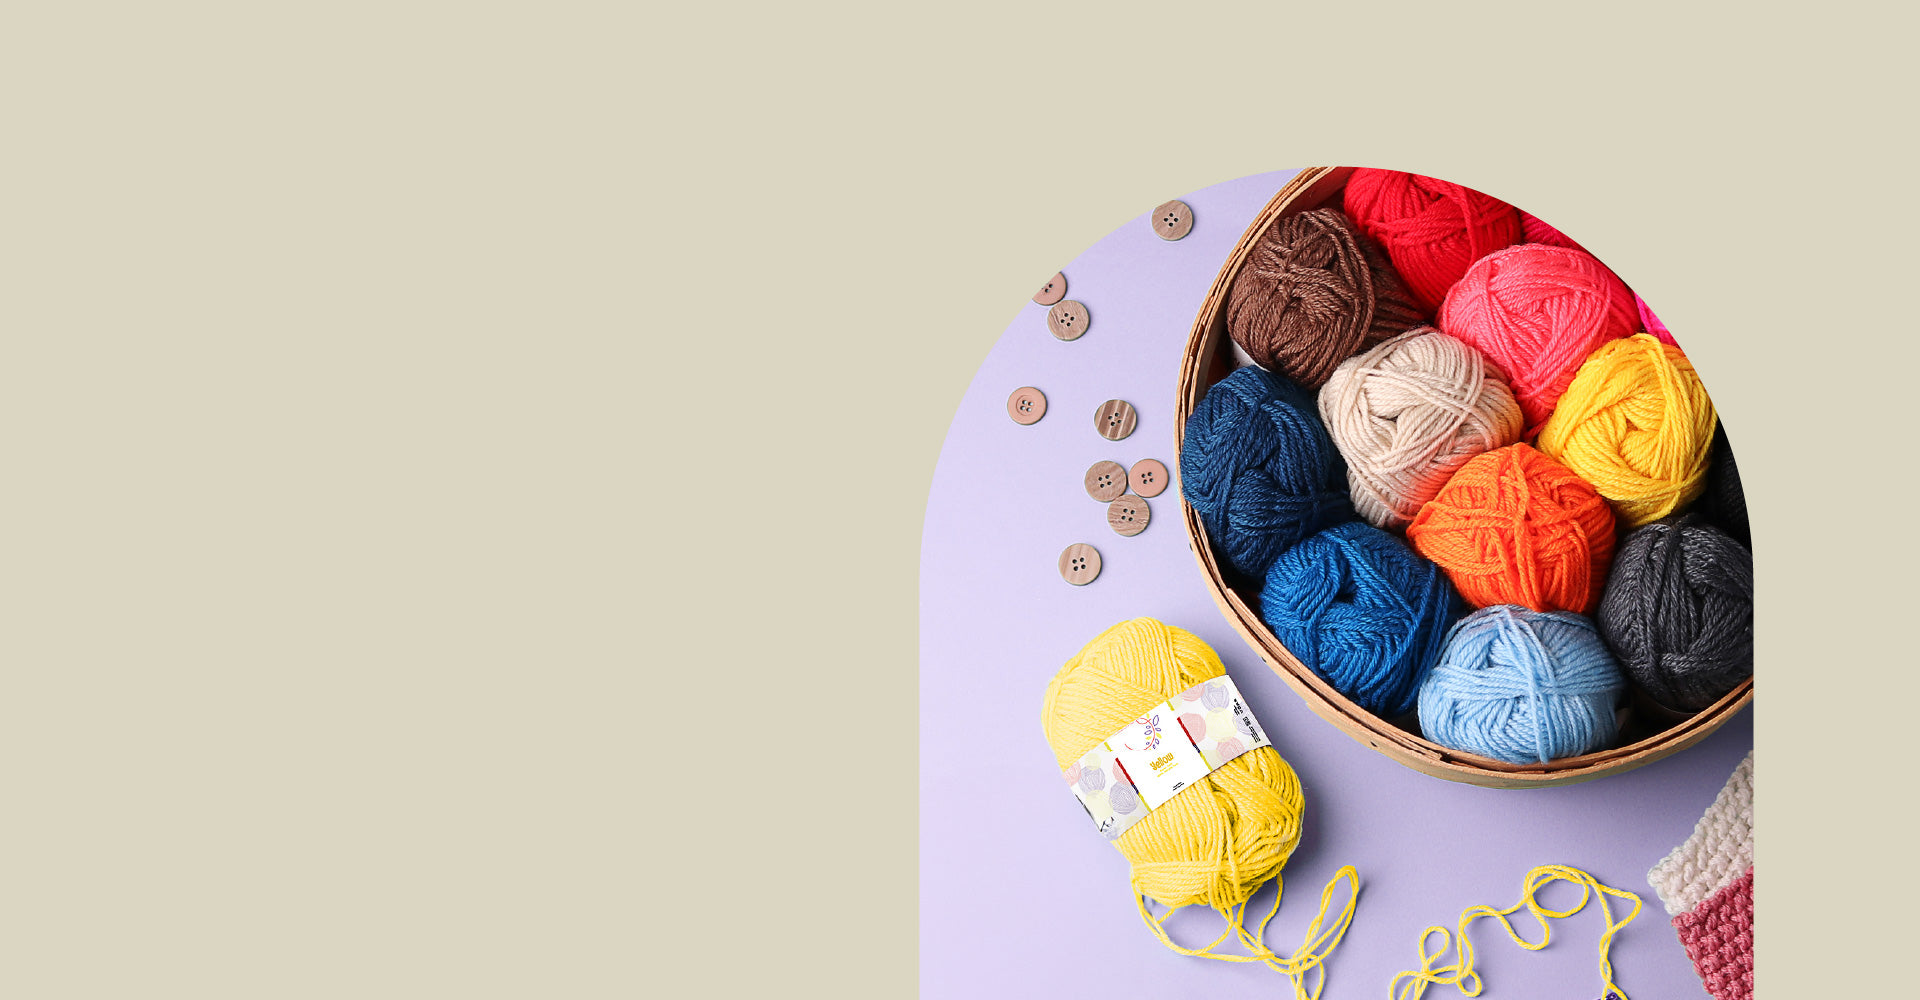 Hearth & Harbor Mini Crochet Set Kit With Yarn And Crochet Hook